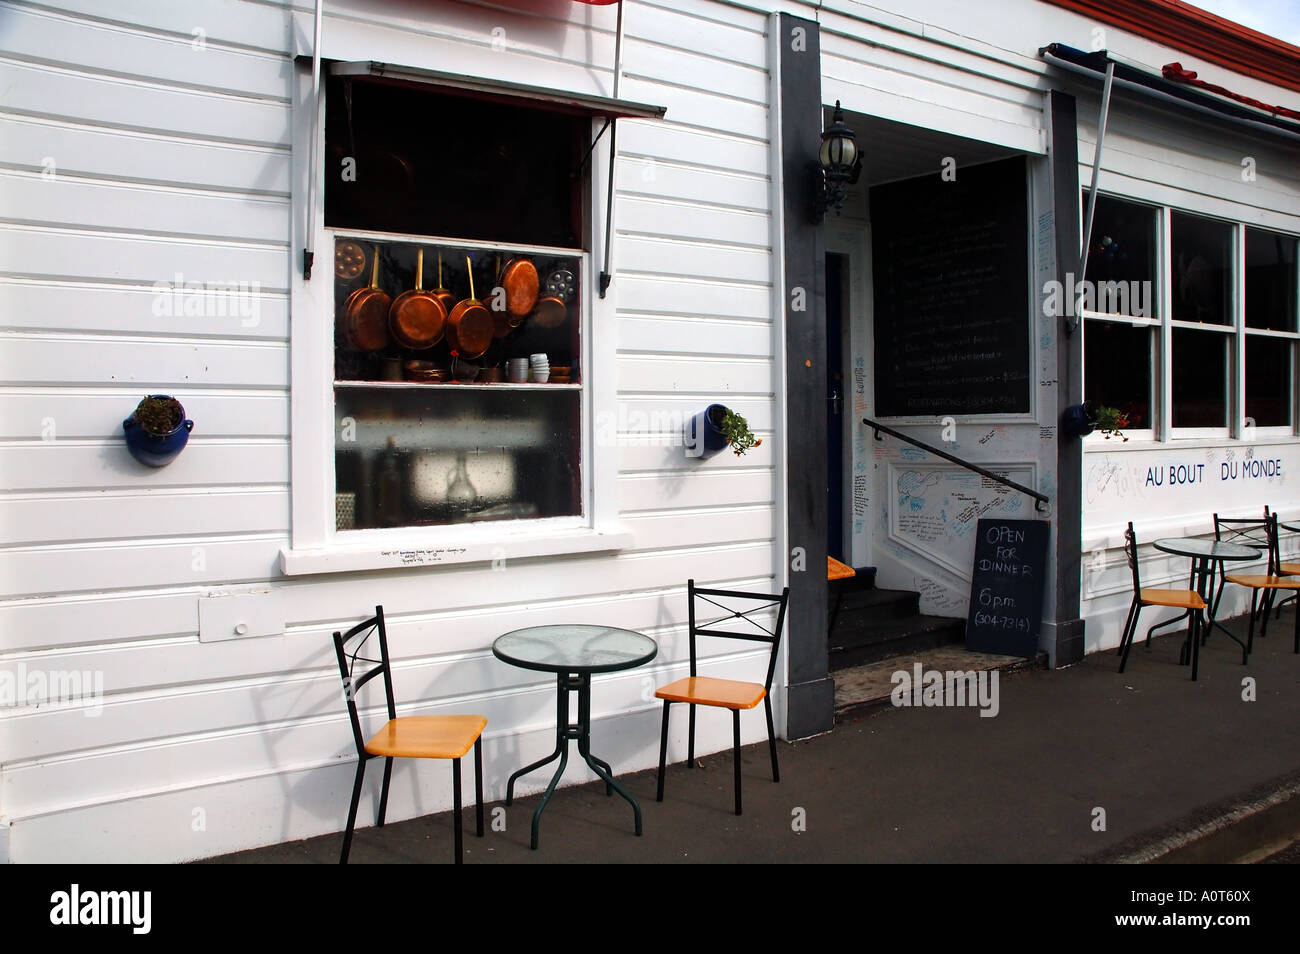 Il ristorante francese c'est la vie con pasti al fresco sulla strada nel centro storico di Akaroa Banks Peninsula Nuova Zelanda n. PR Foto Stock